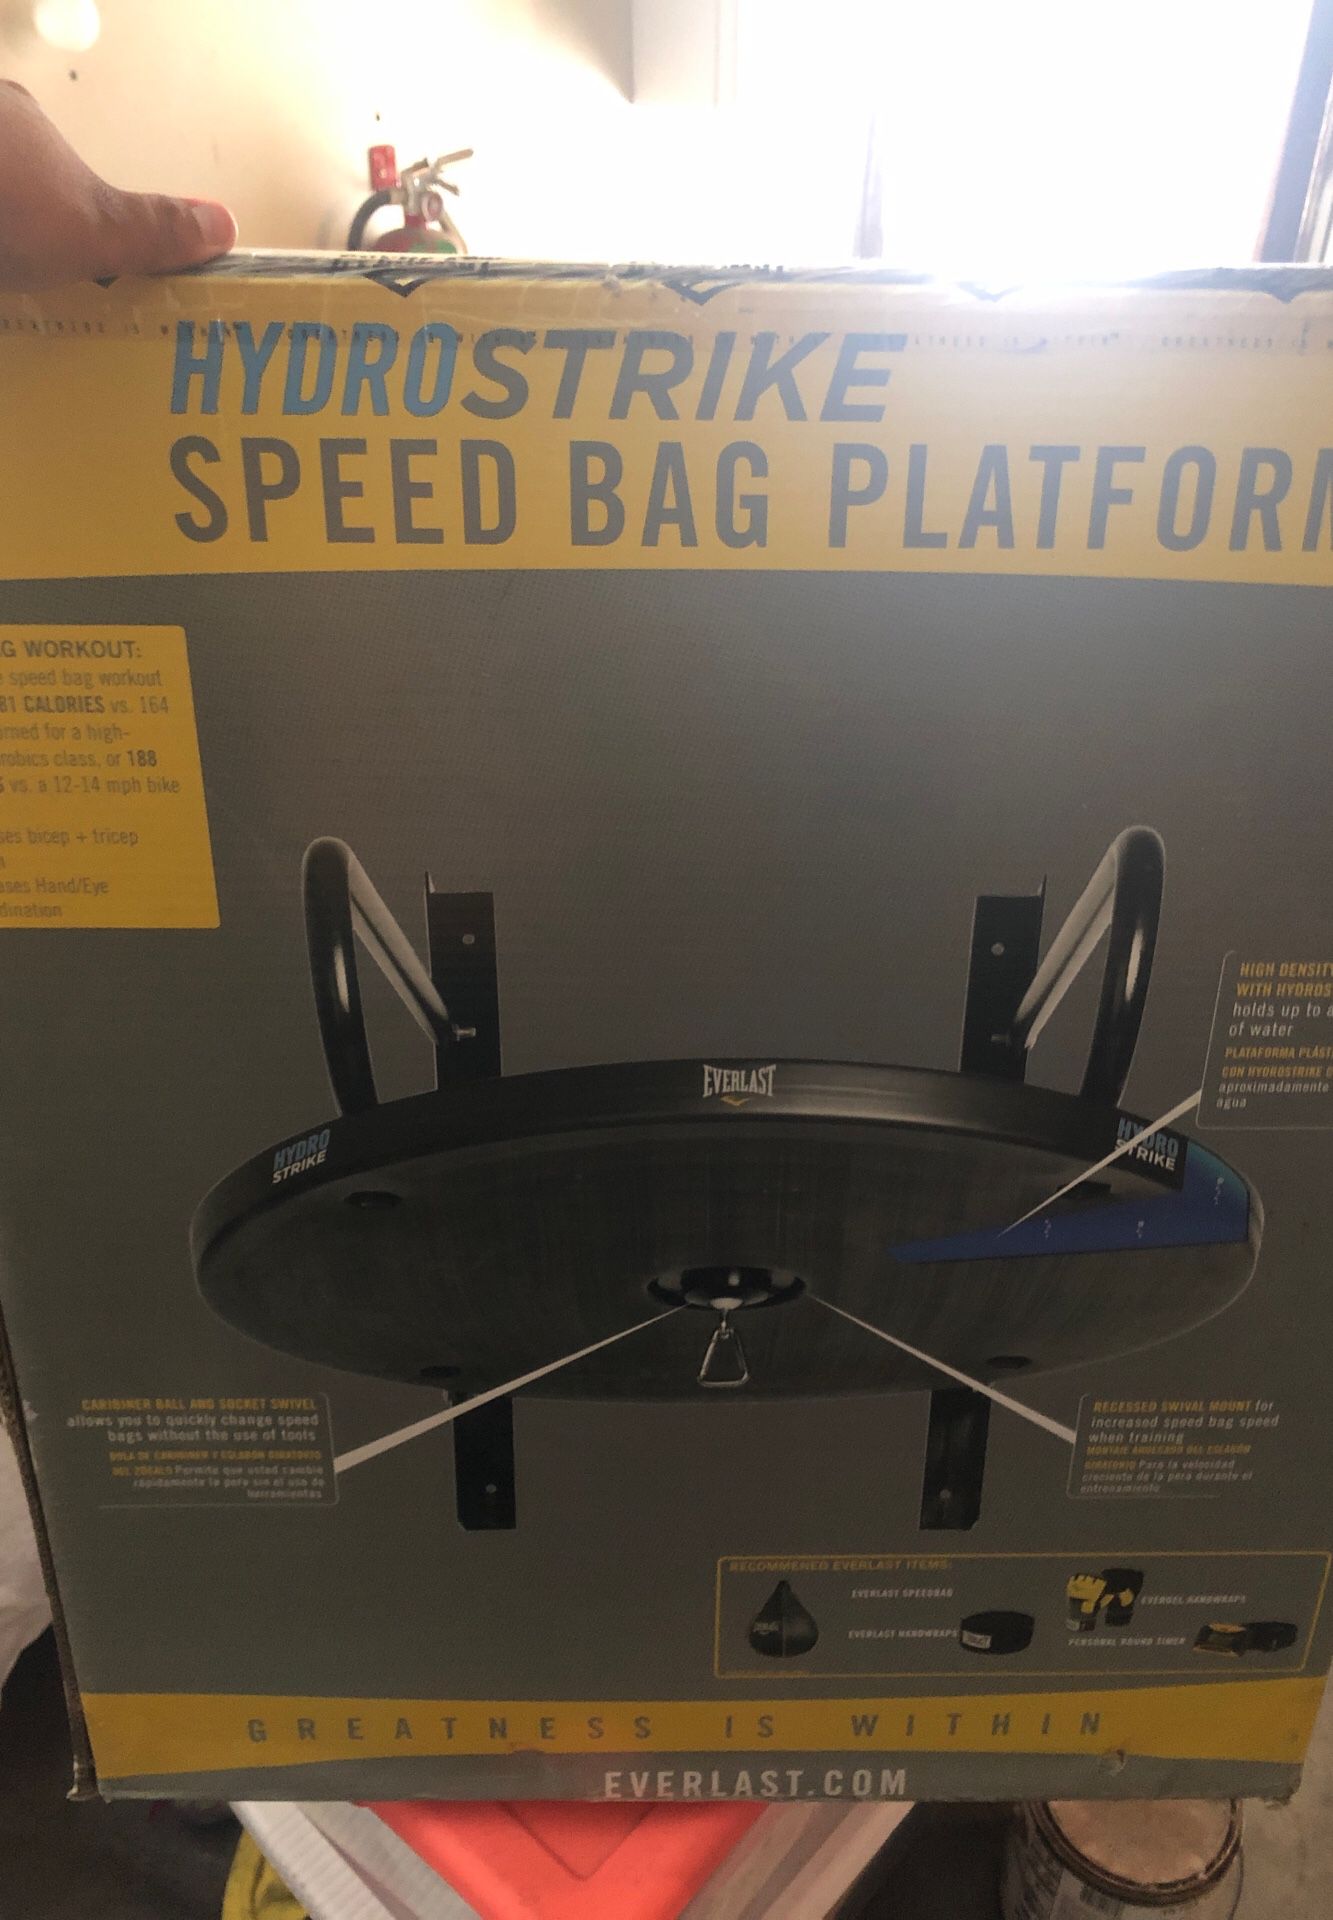 EverLast speed bag